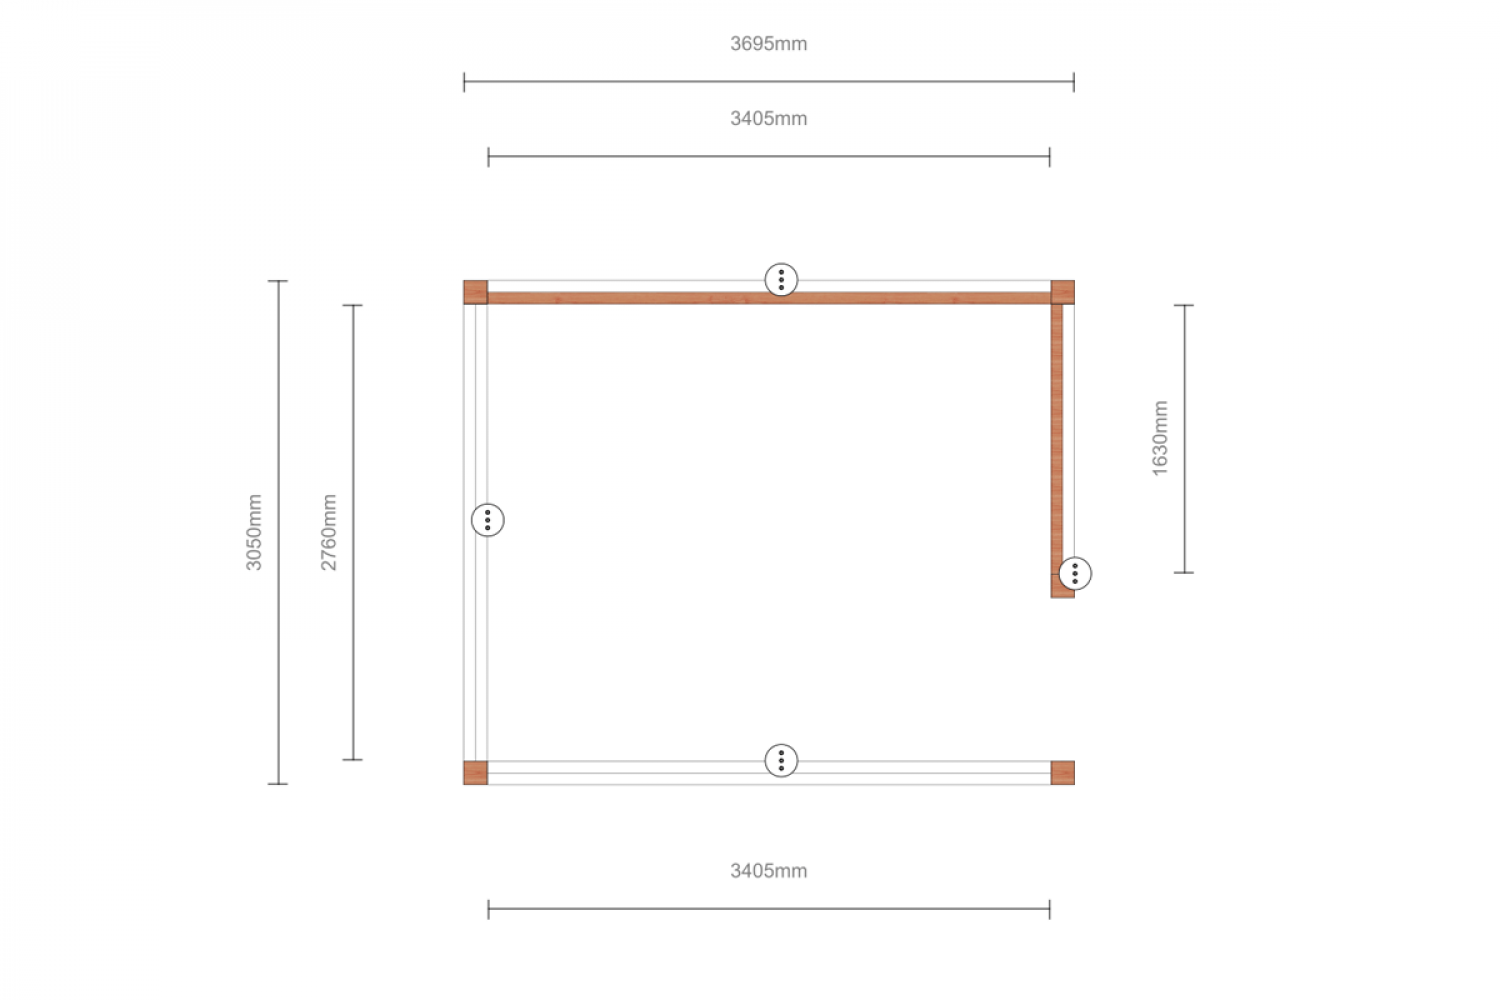 Buitenverblijf Verona 400x335 cm - Plat dak model rechts incl. toebehoren - SALE01527